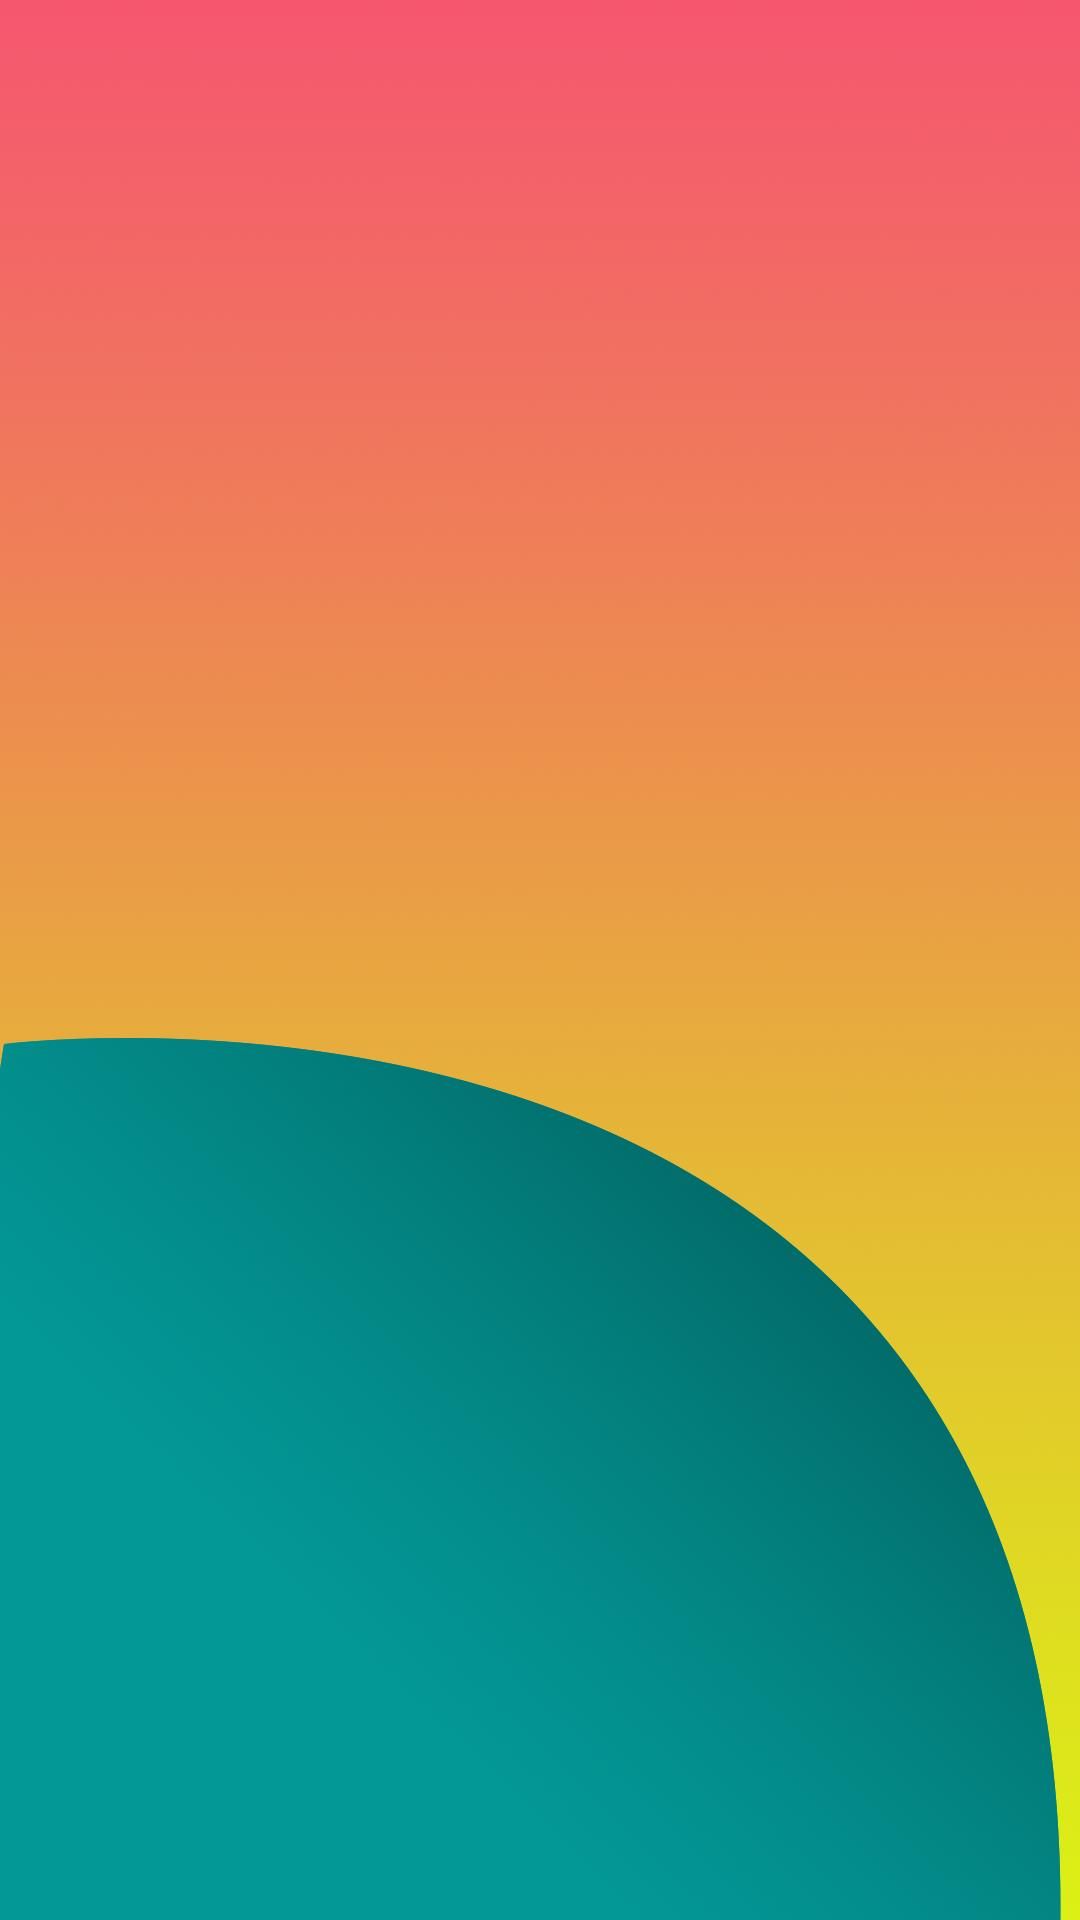 Nexus 6 Wallpapers - Top Free Nexus 6 Backgrounds - WallpaperAccess